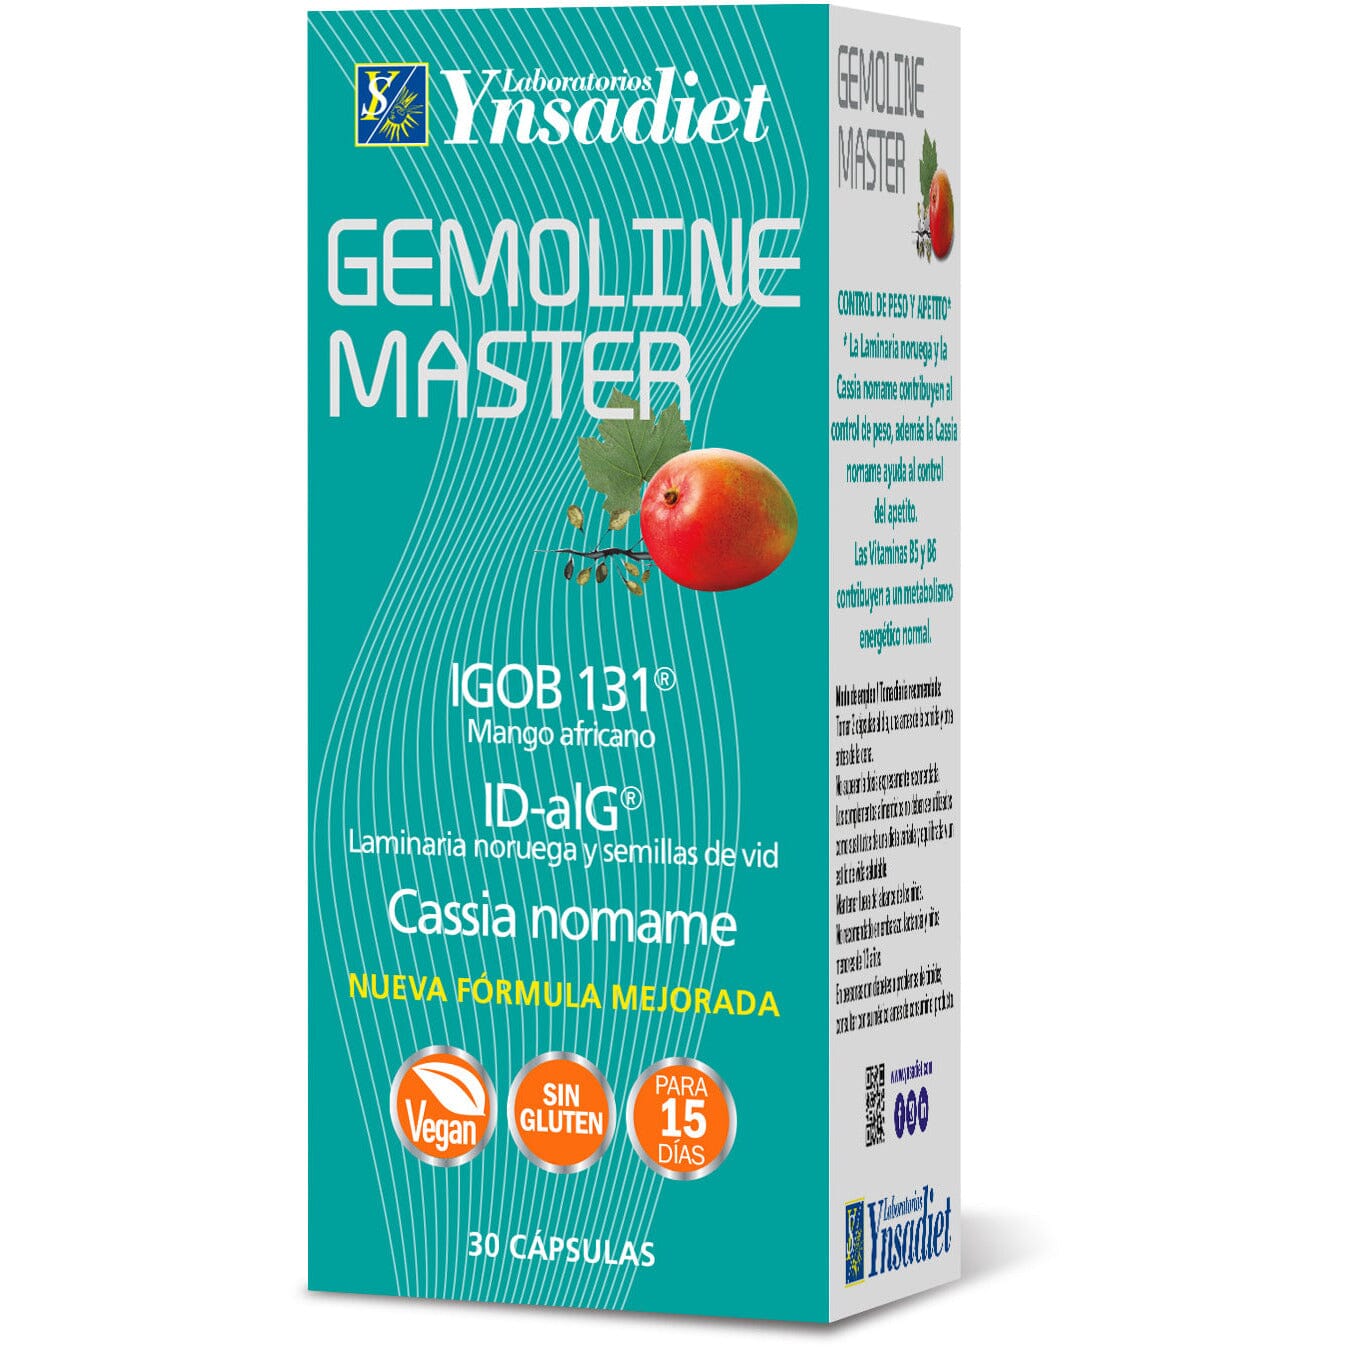 Gemoline Master 30 cápsulas | Ynsadiet - Dietetica Ferrer